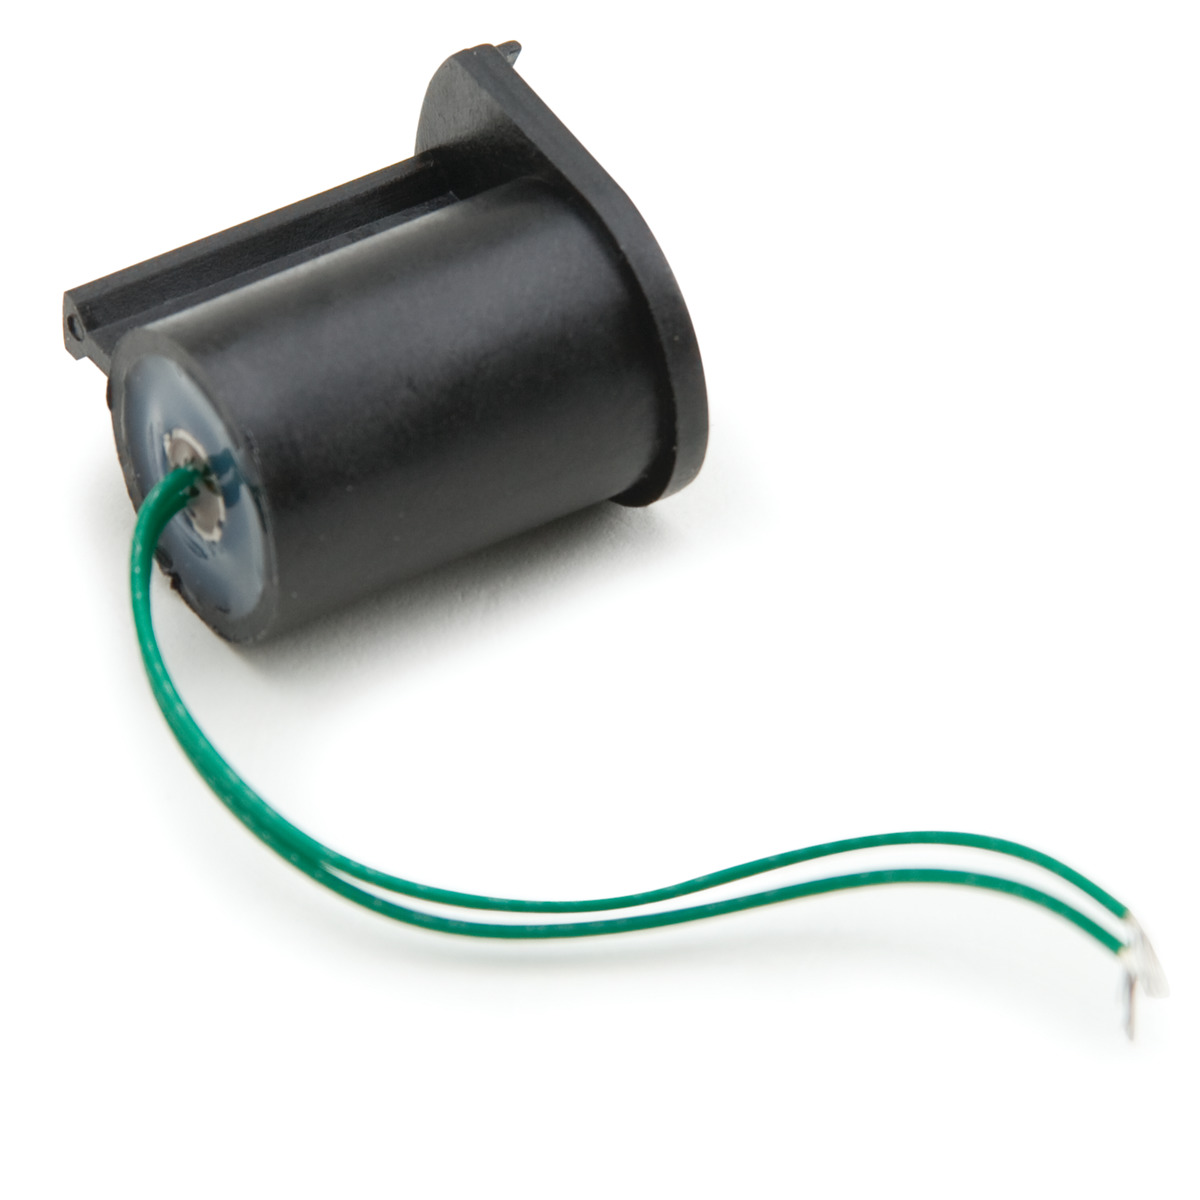 Replacement Lamp for Turbidity Meter - HI740234